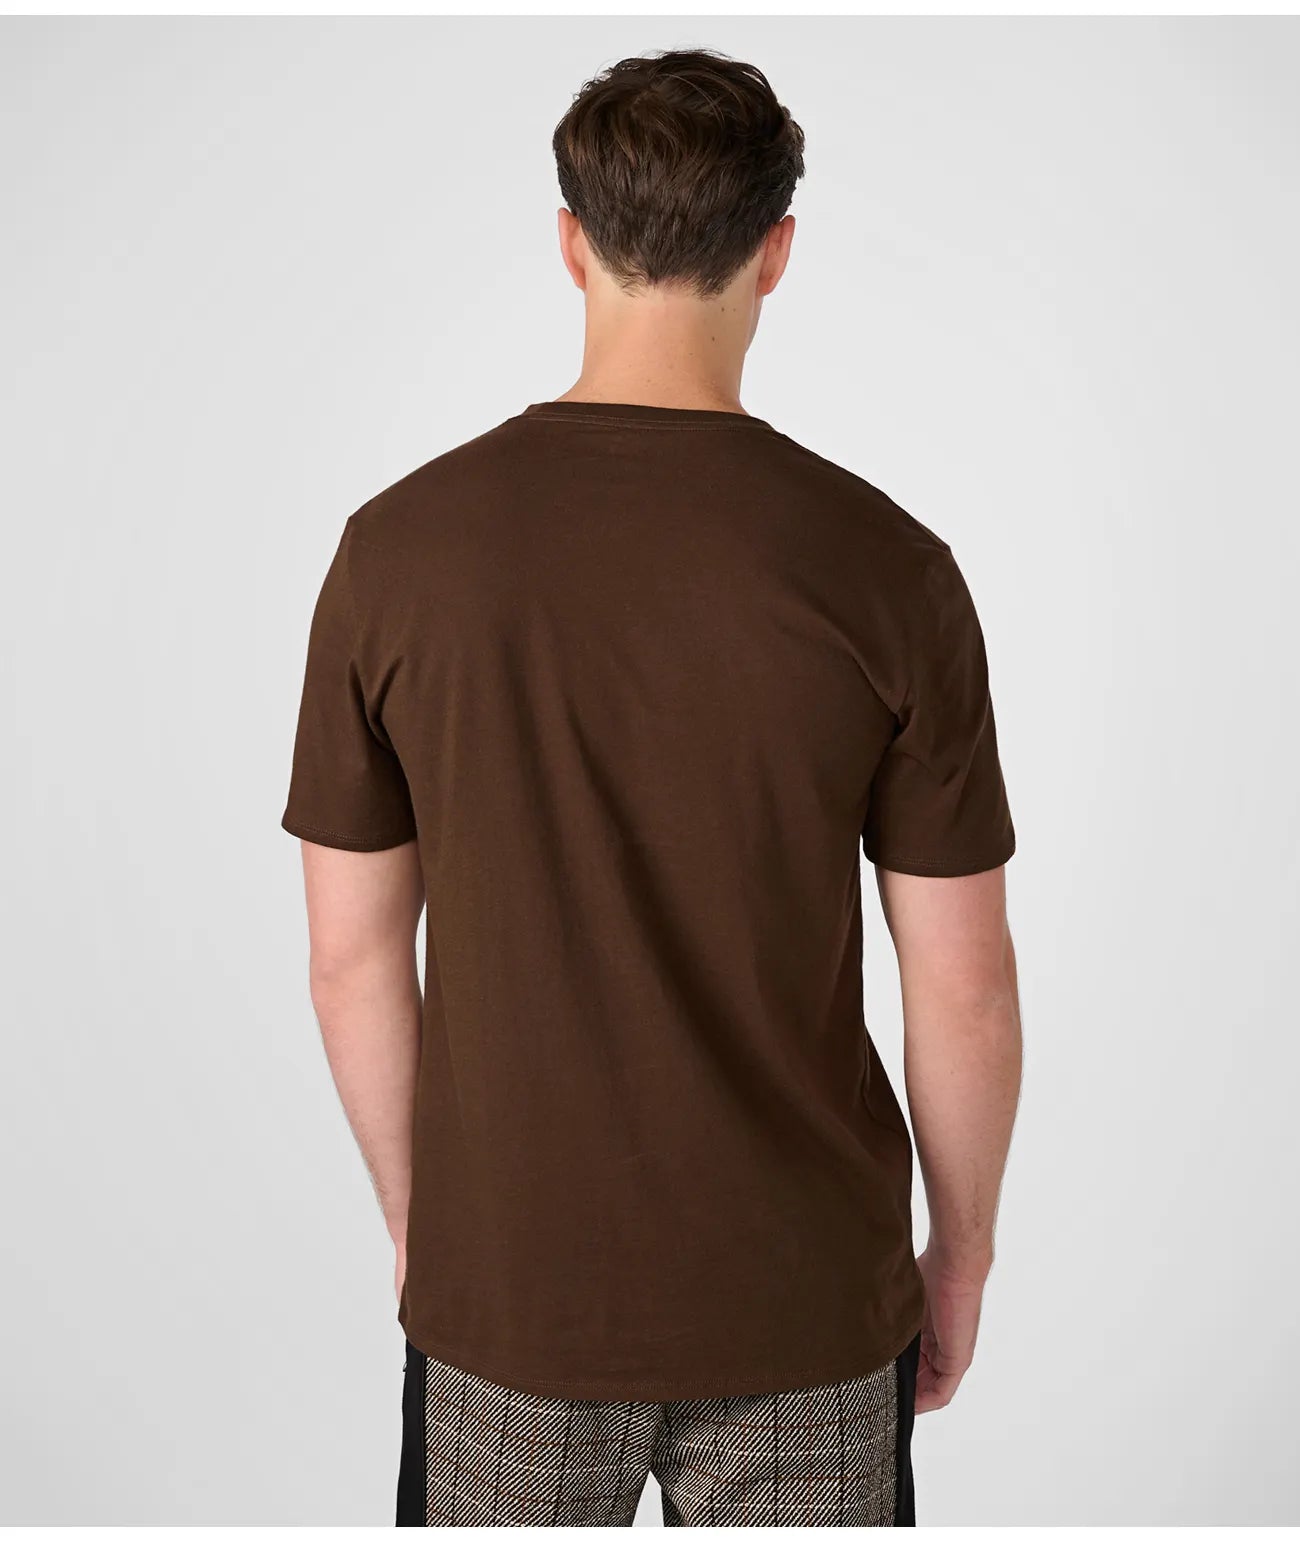 Camiseta Karl Lagerfeld Dark Brown